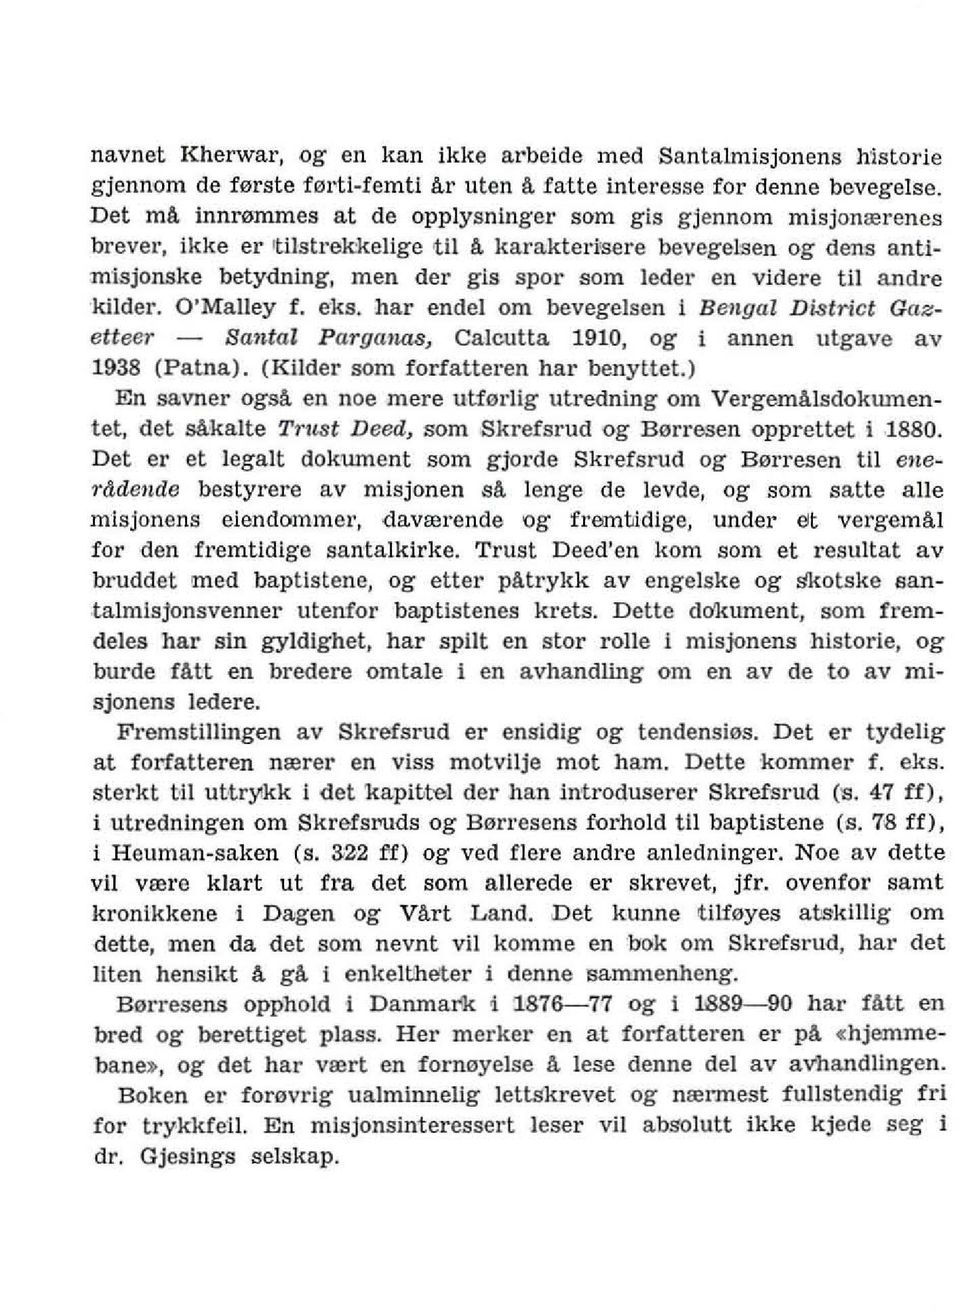 videre til andre kuder. O'Malley f. e'ks. hal' endel om bevegelsen i Bengal Di..'ltrict Gazetteer - Bantal Parganas) Calcutta 1910, og i annen ulgave av 1938 (Patna).